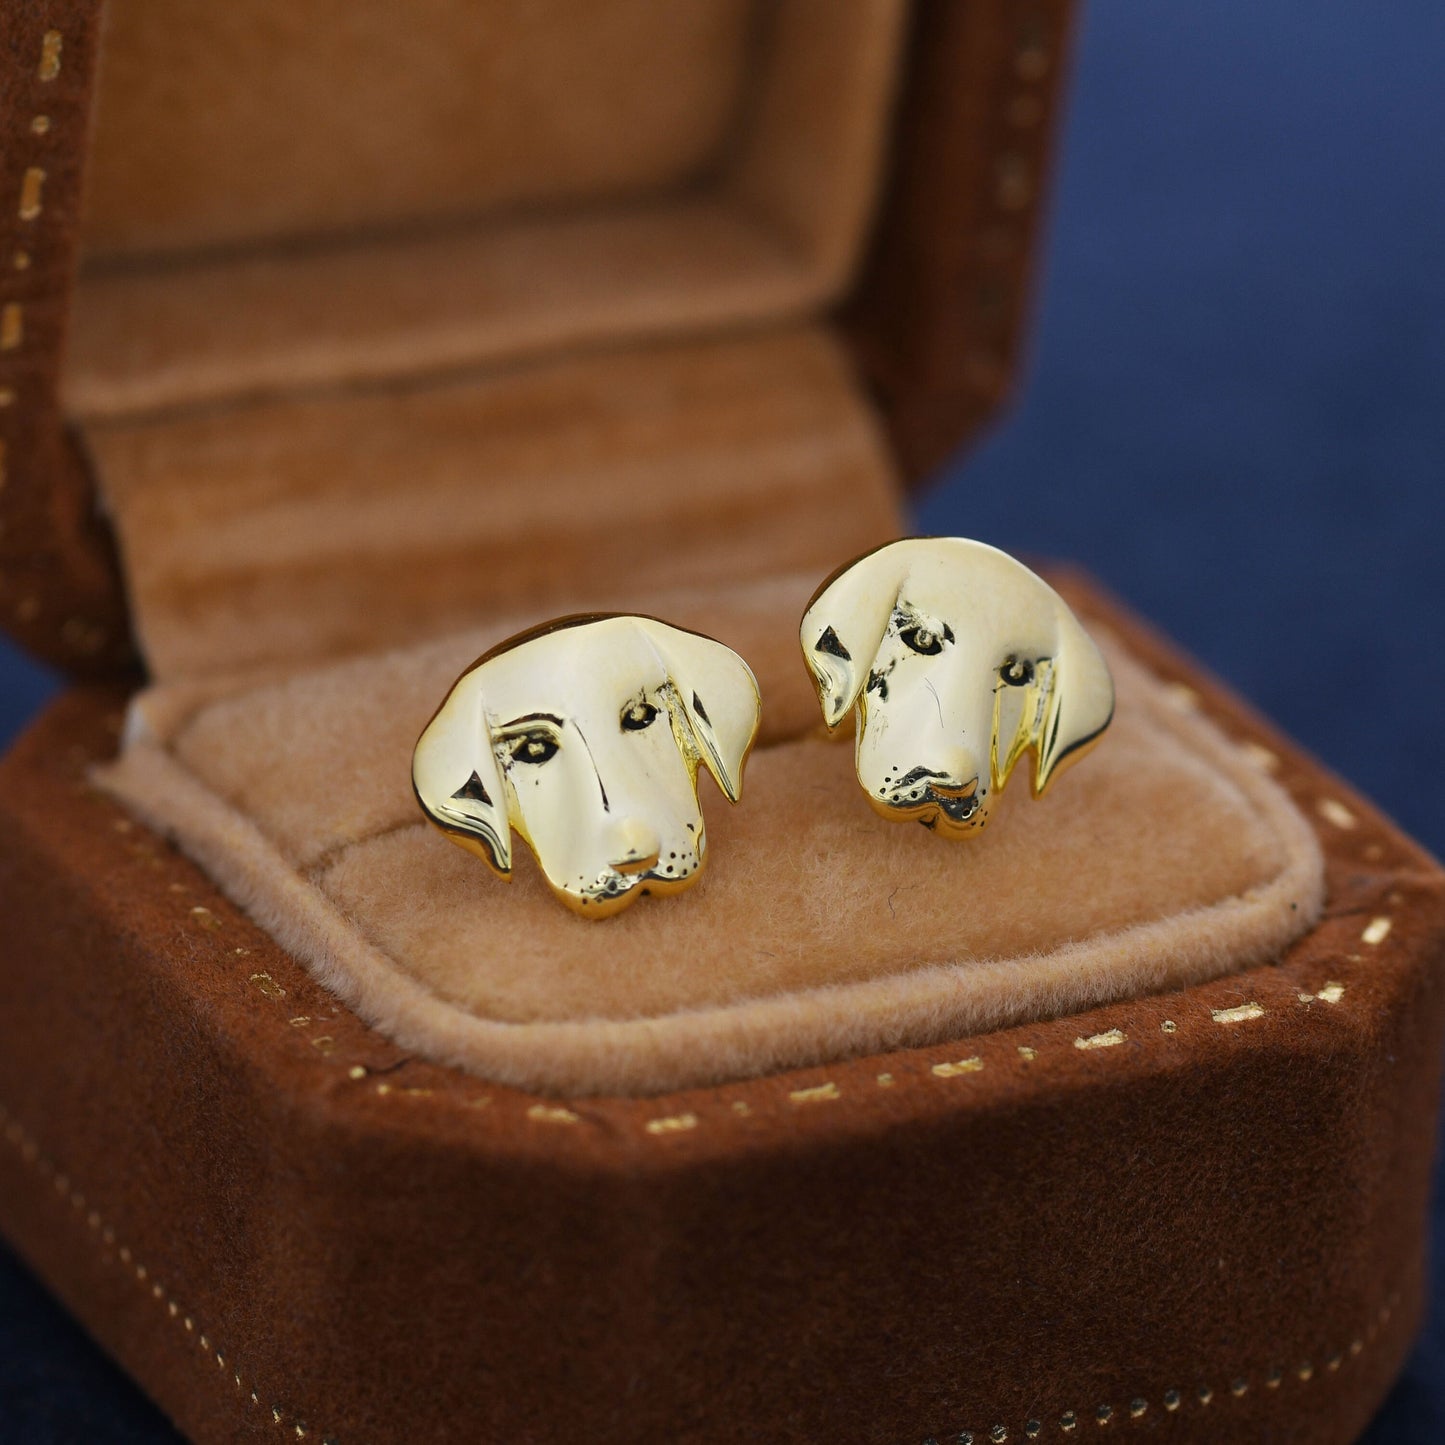 Labrador Dog Stud Earrings in Sterling Silver, Silver or Gold, Silver Labrador Earrings, Silver Dog Earrings